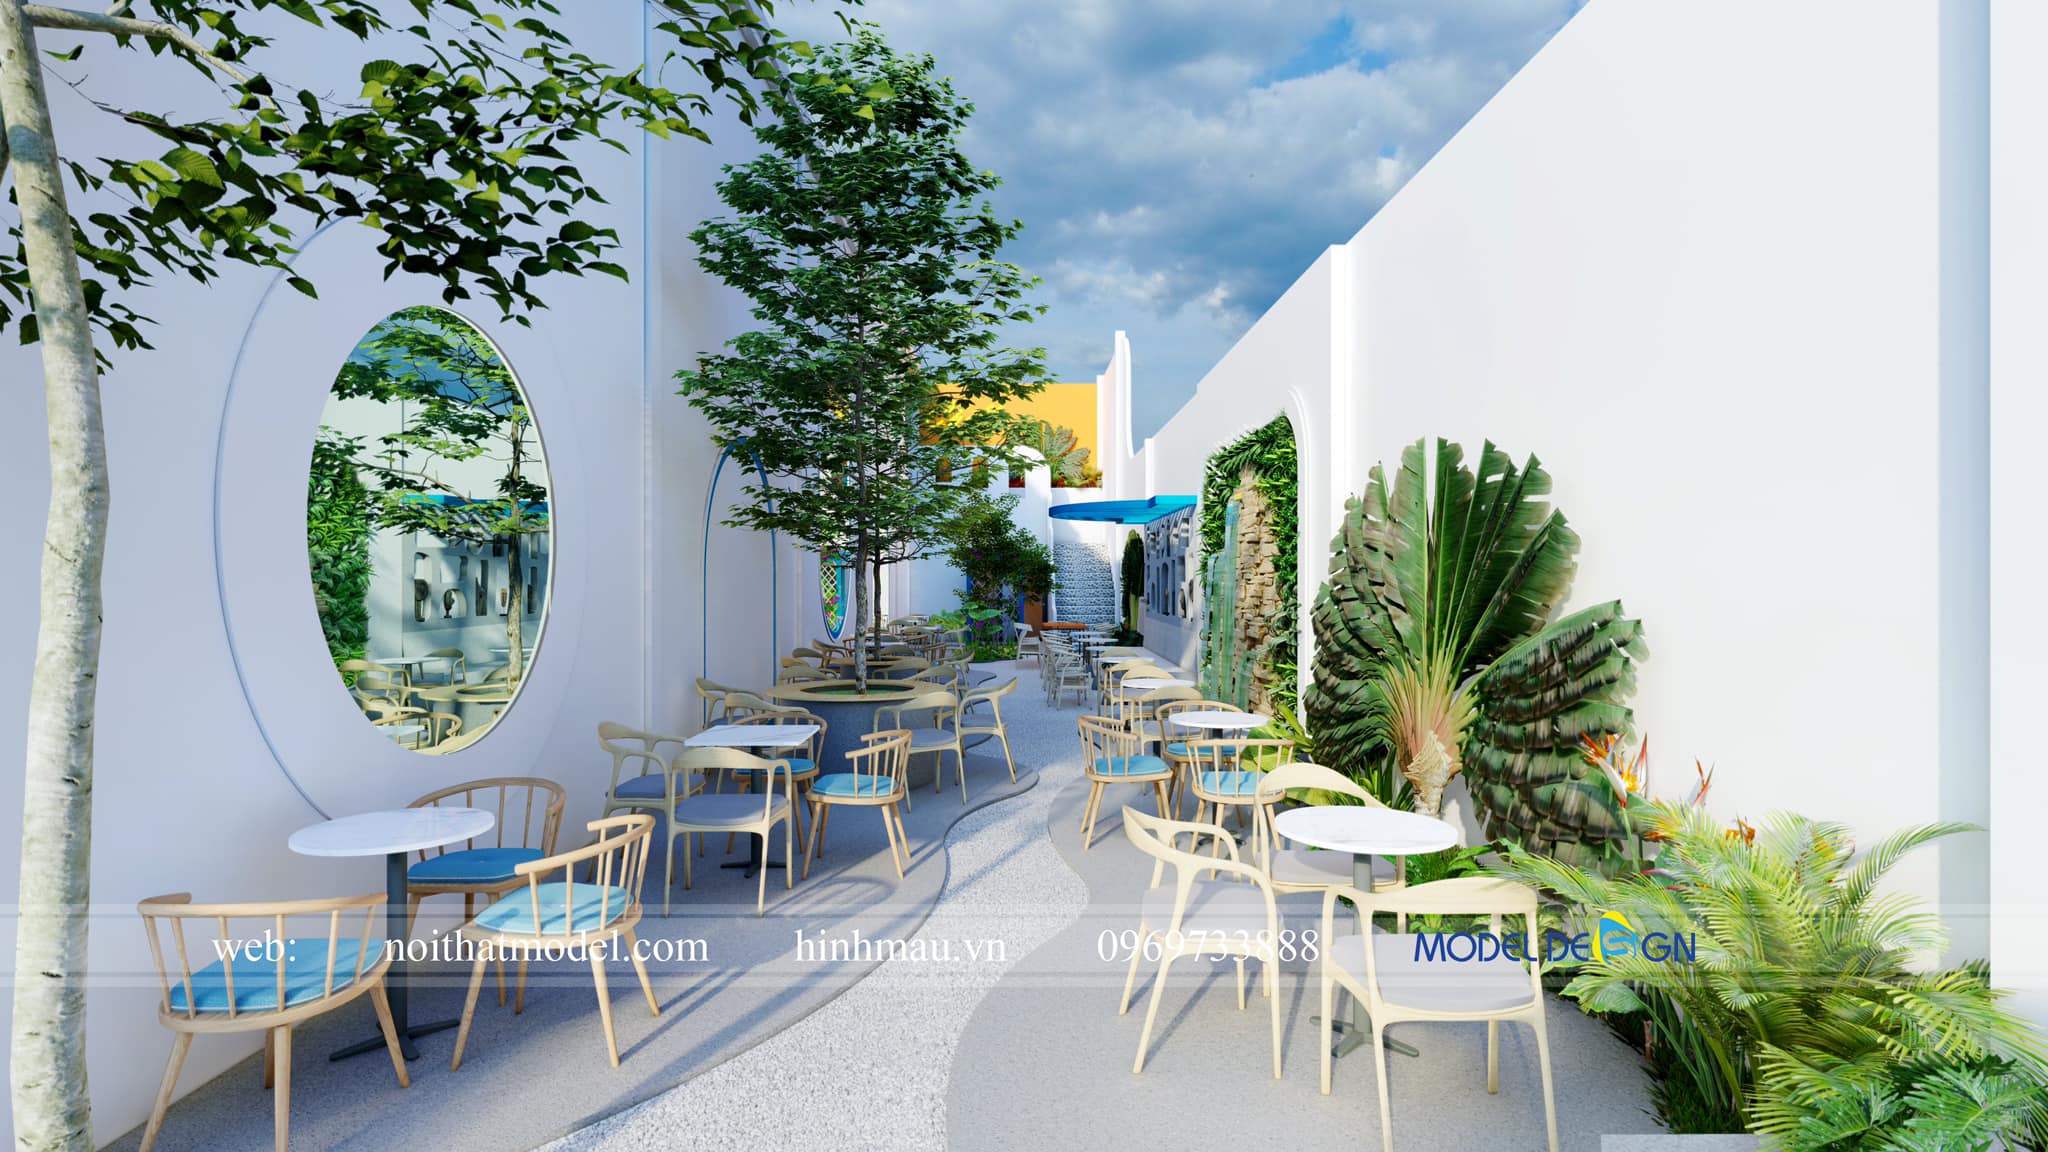 Thiết kế quán cà phê sân vườn Đồng Tháp 2